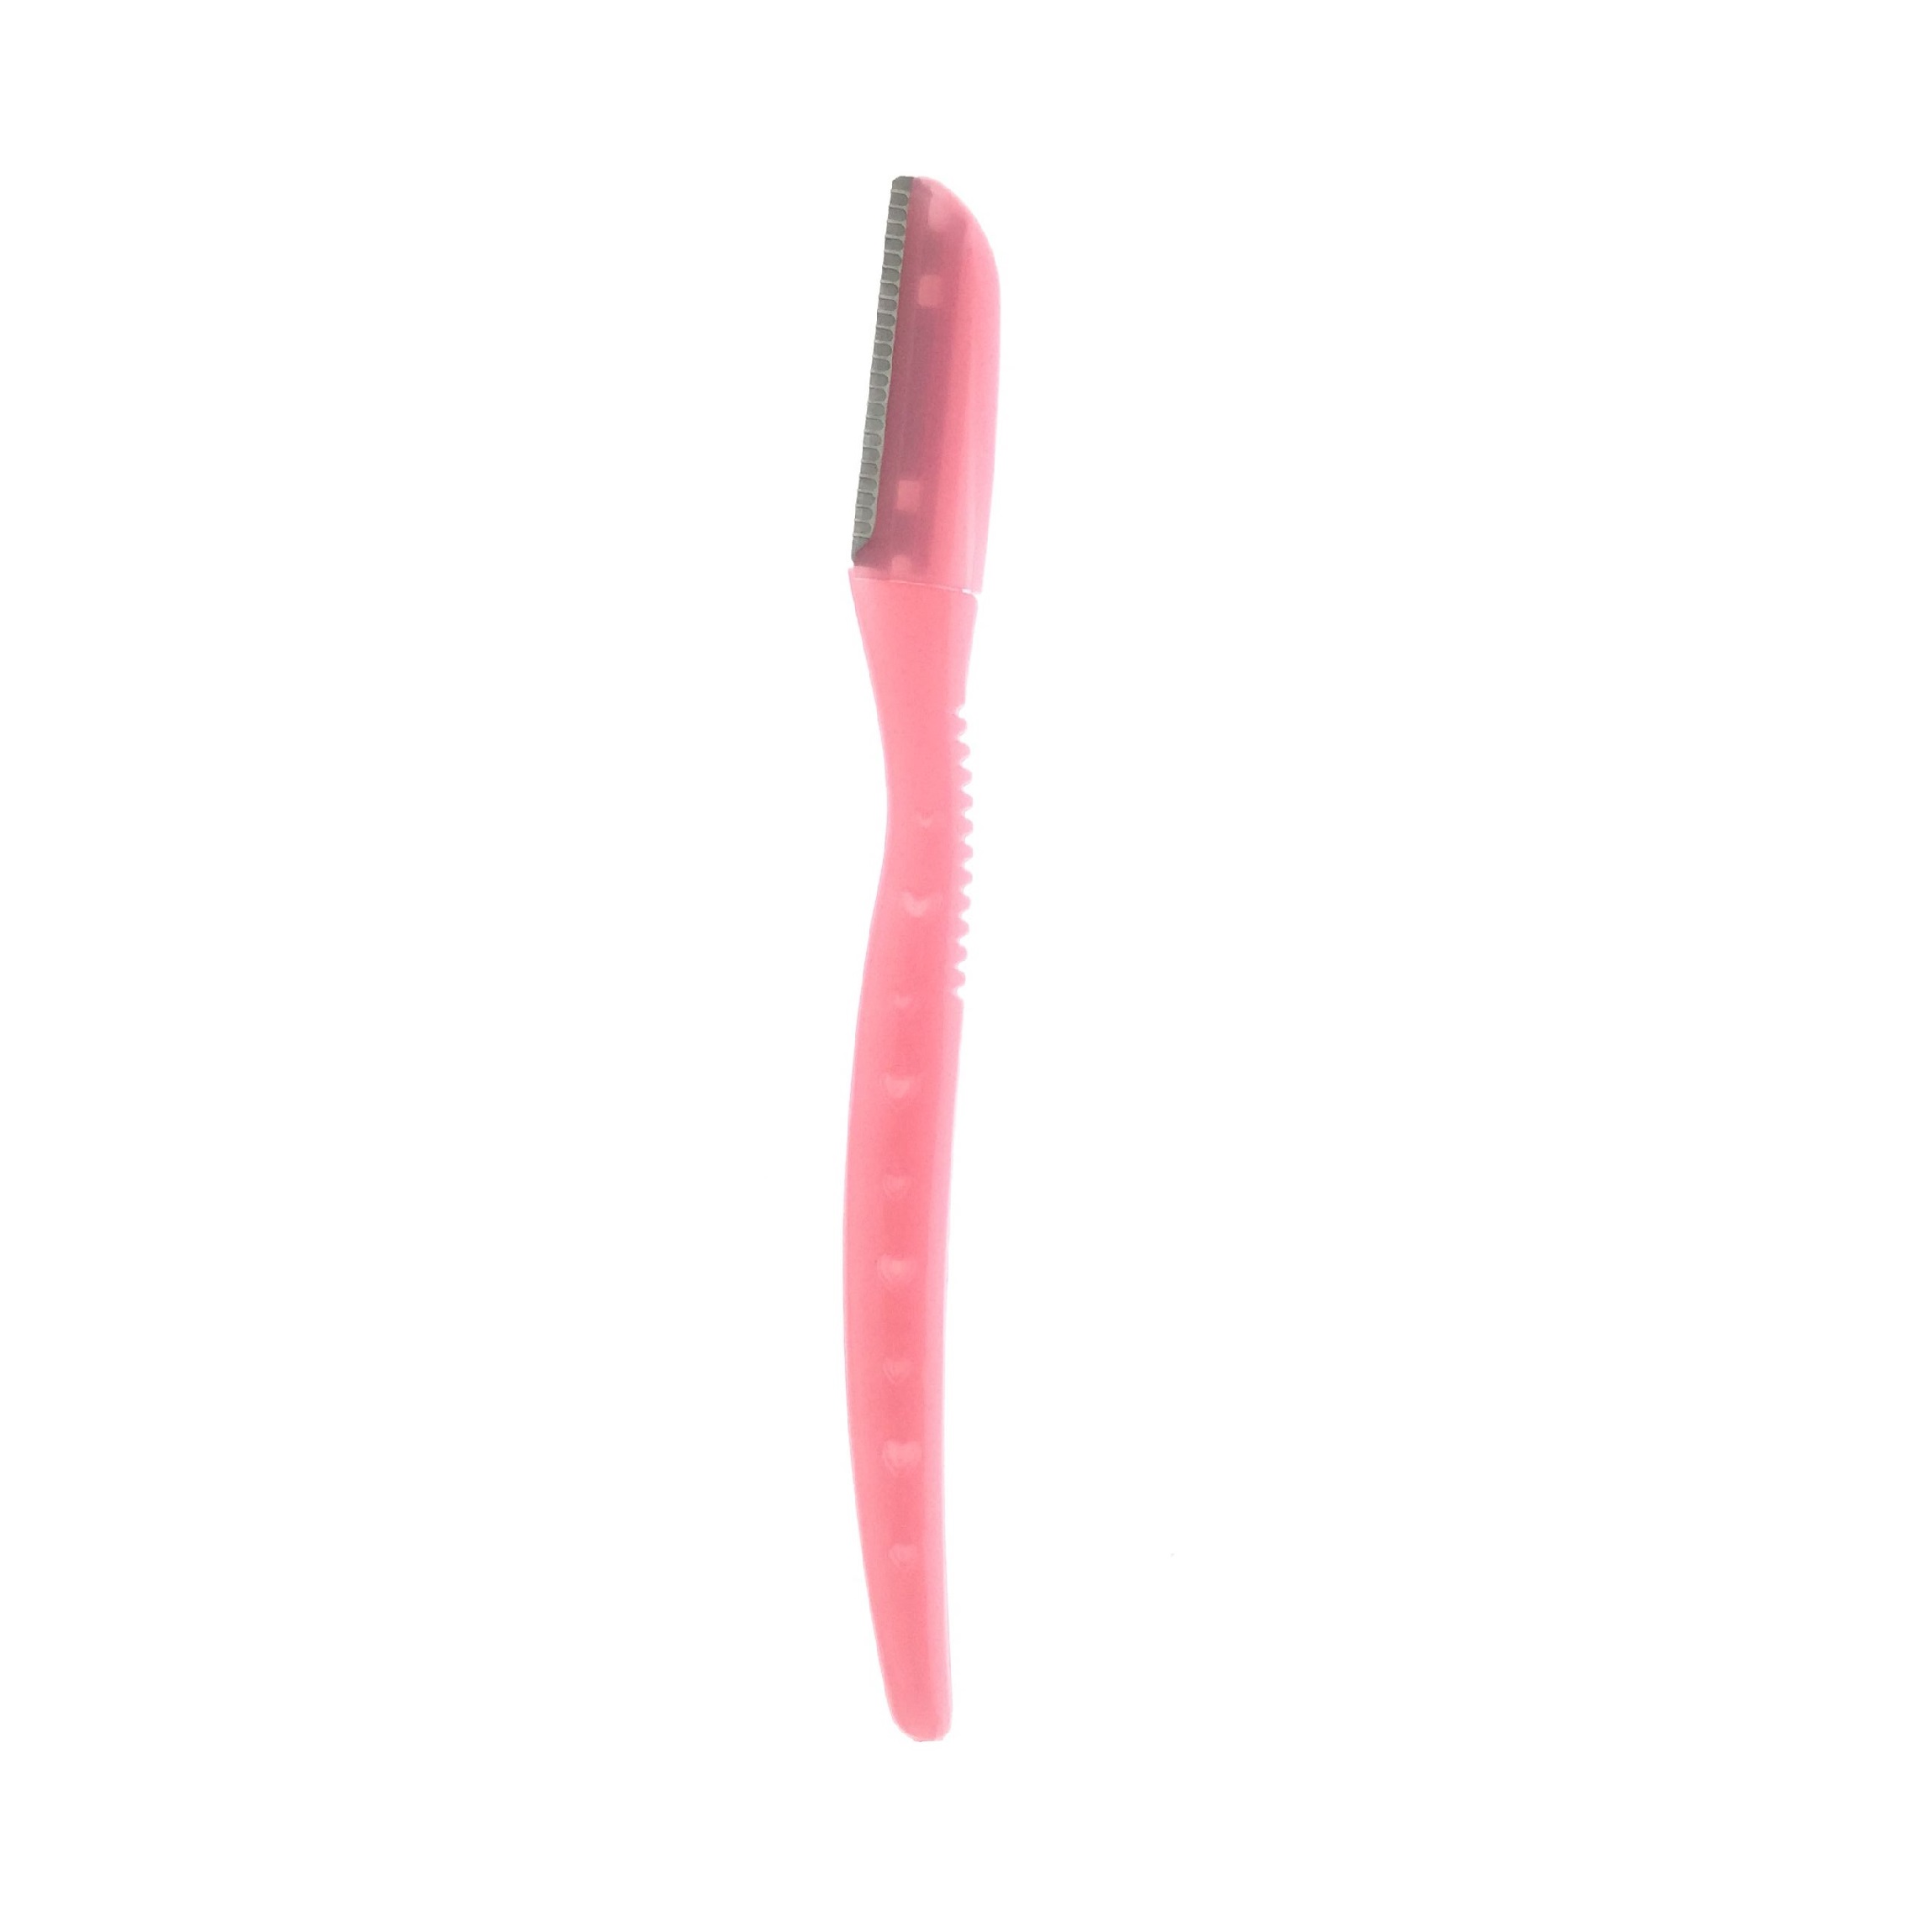 Rasoio di rasoio rosa del sopracciglio del sopracciglio del sopracciglio con la copertura di precisione